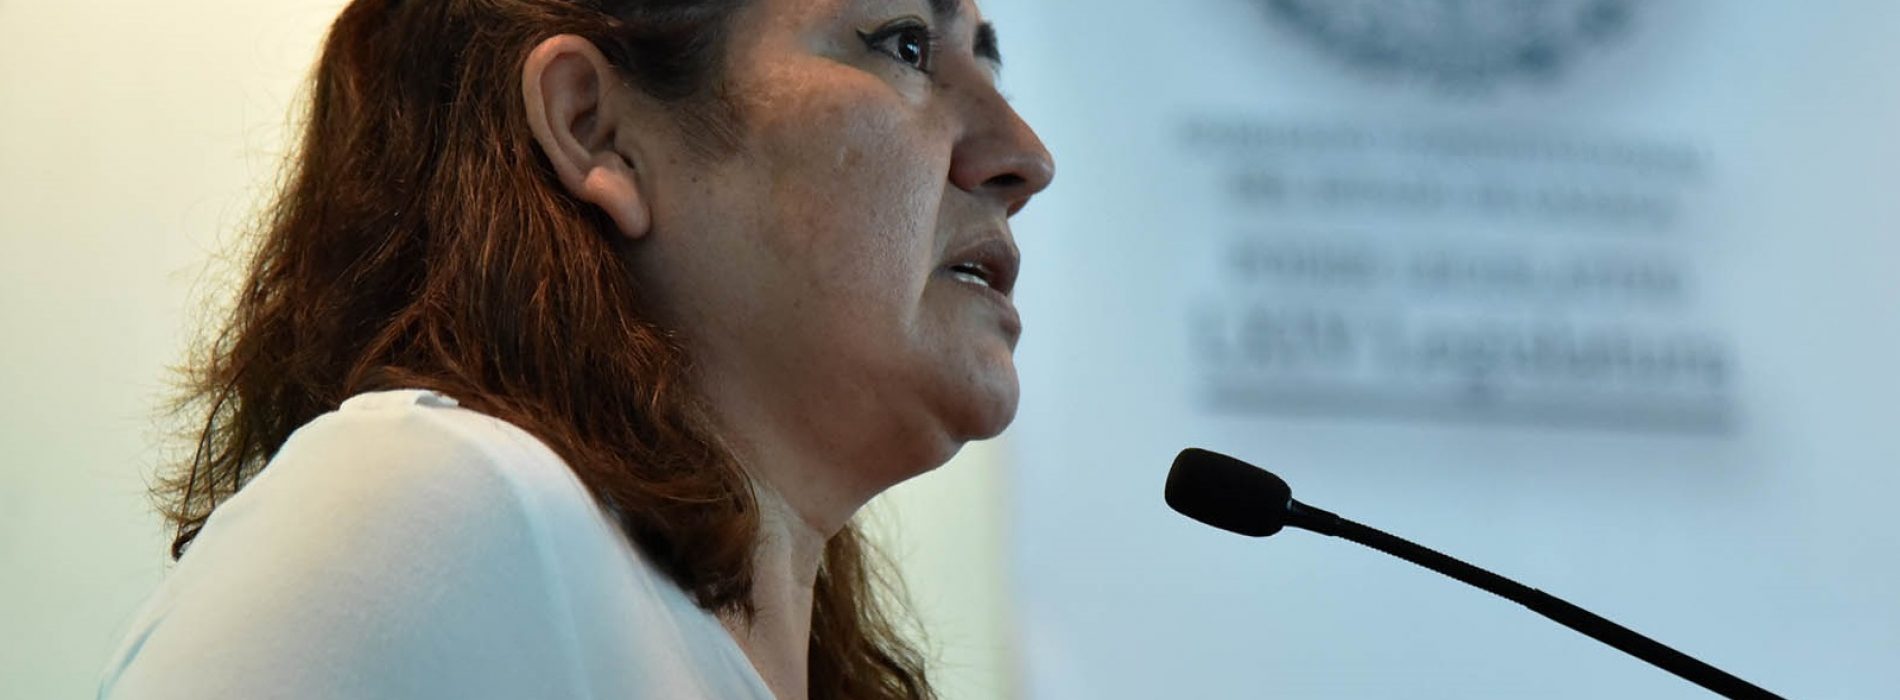 Trabajo conjunto para garantizar educación a distancia, pide diputada María de Jesús Mendoza